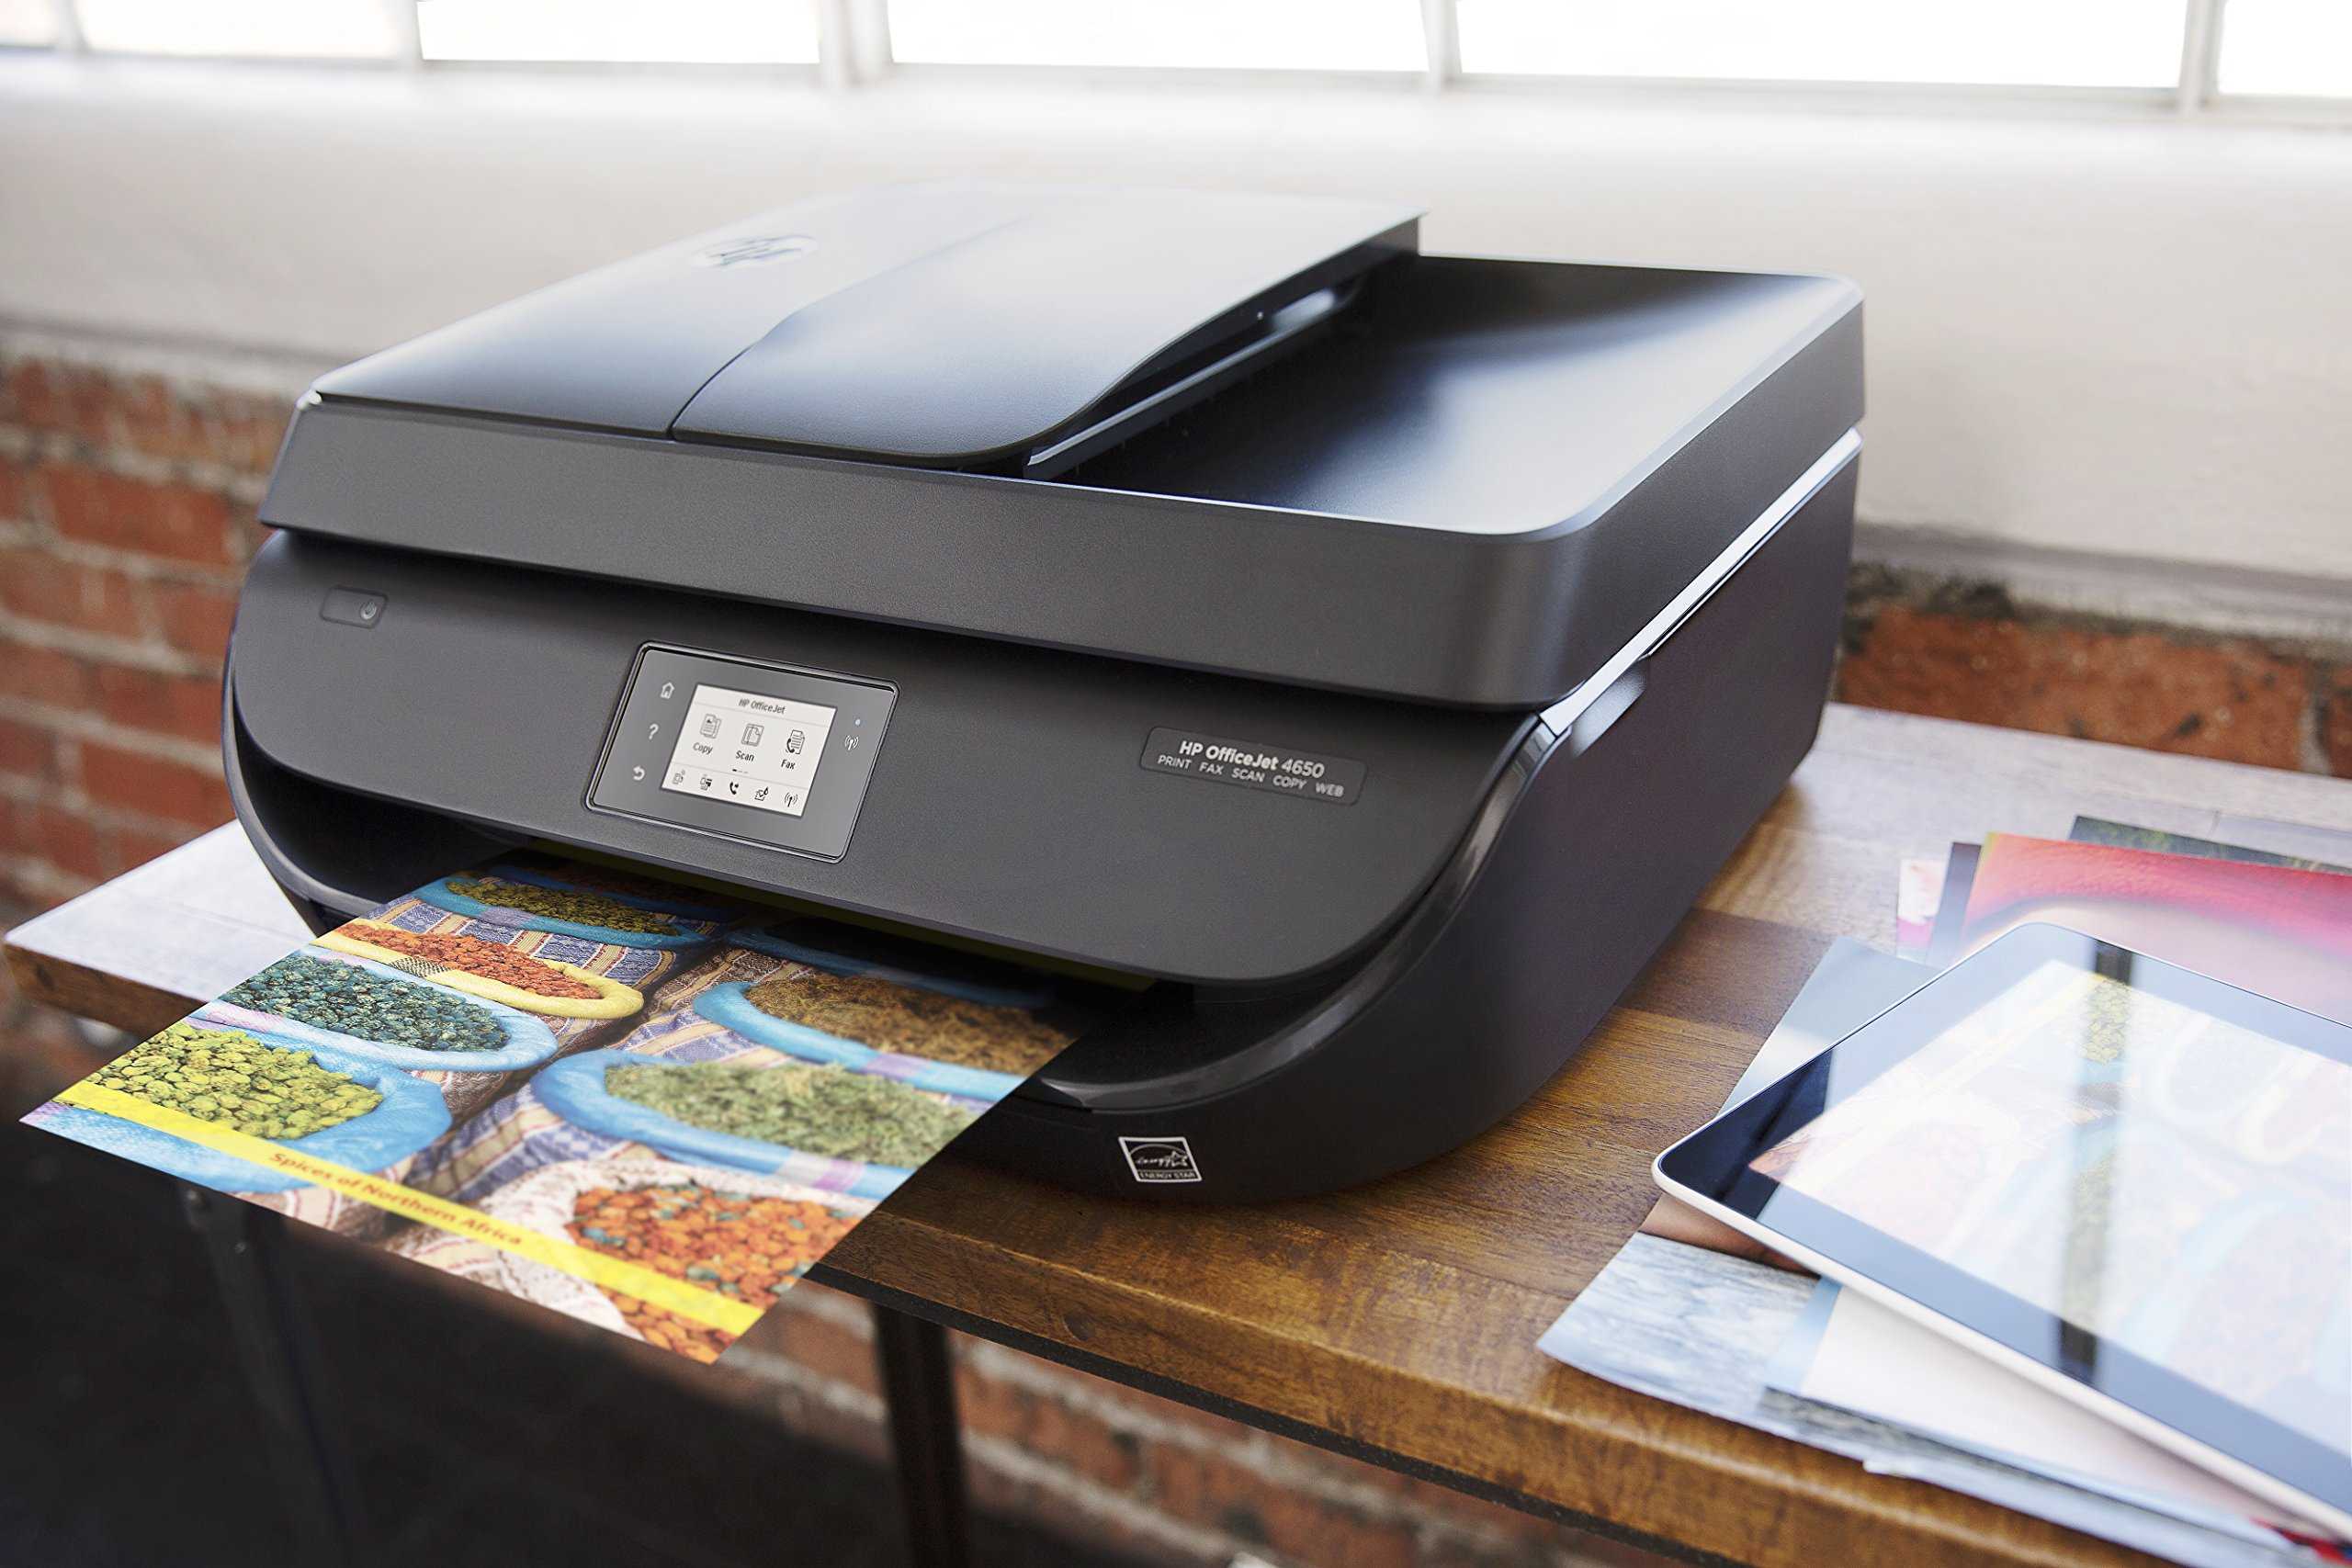 Струйный или лазерный принтер: что лучше для дома и офиса?